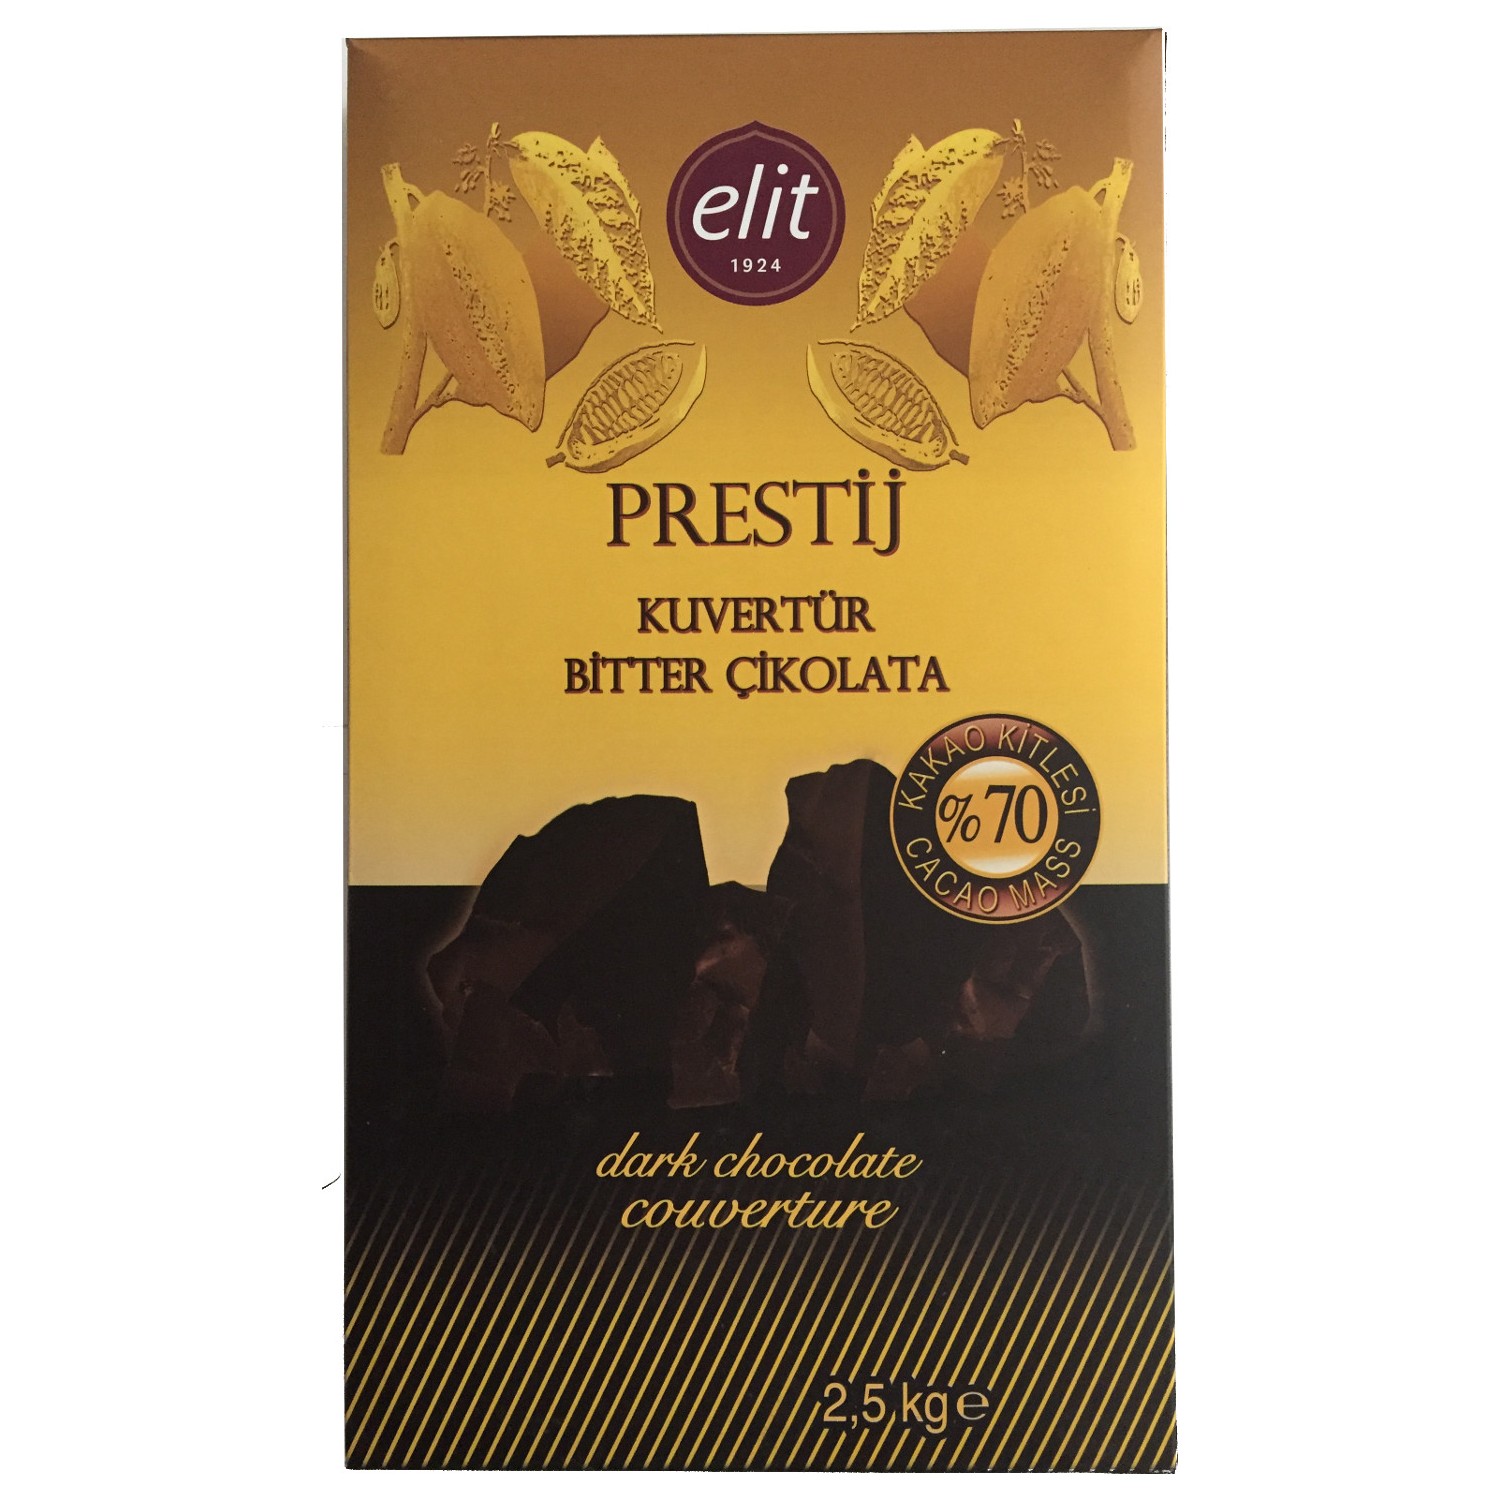 Elitparti Elit Prestij Kuvertür Bitter Çikolata (2.5 Kg) Fiyatı